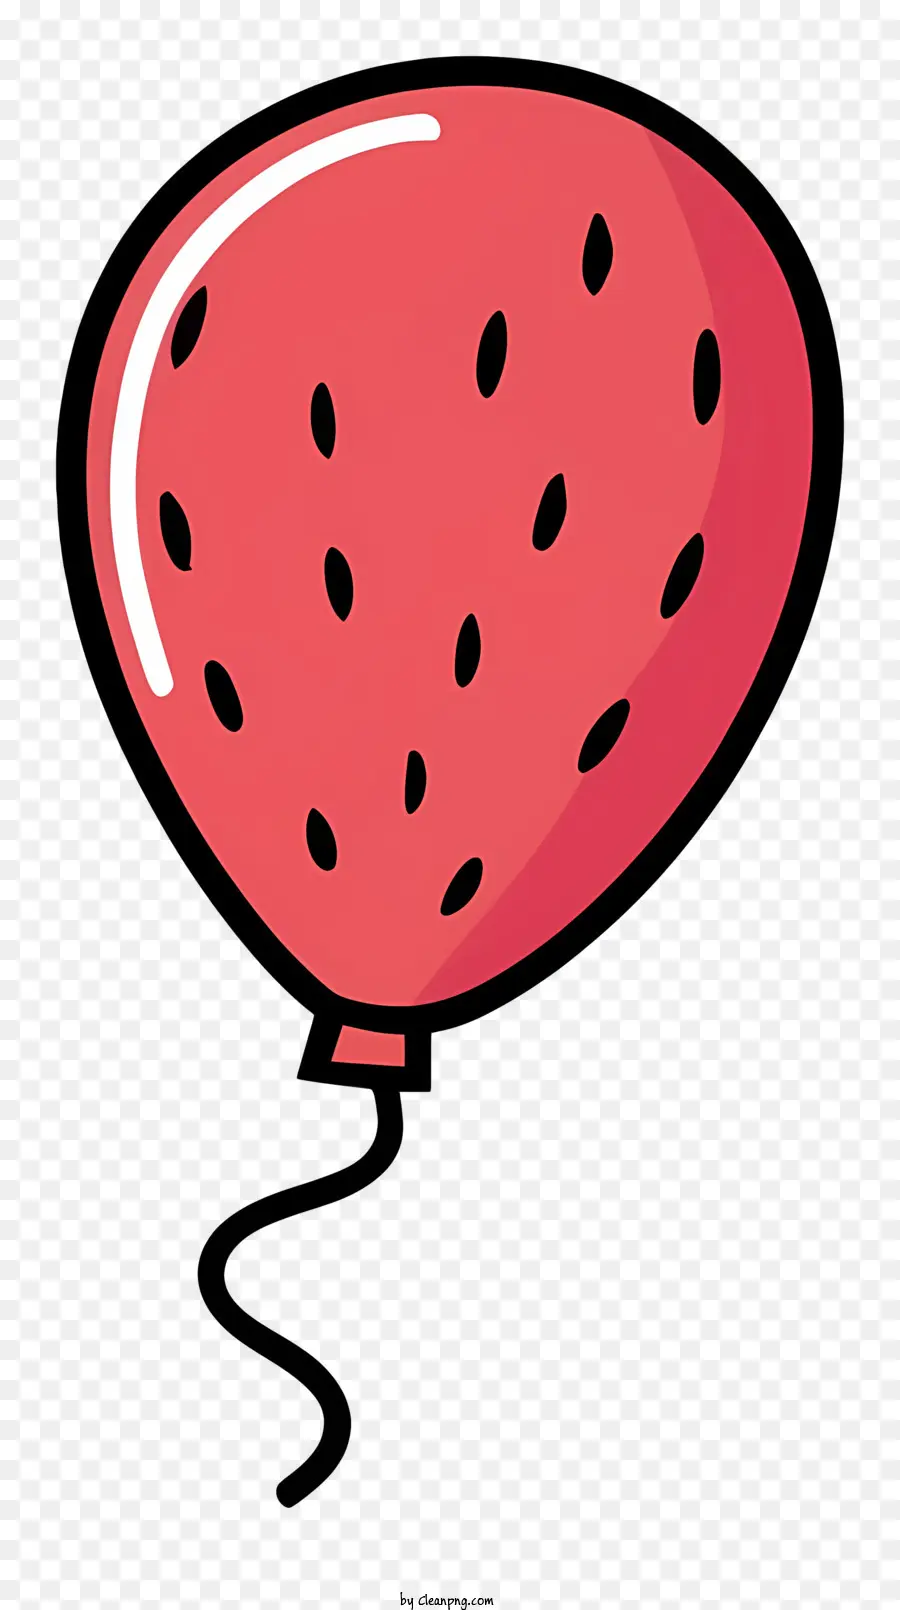 Roter Ballon - Rotballon mit Wassermelonenscheibenbild befestigt